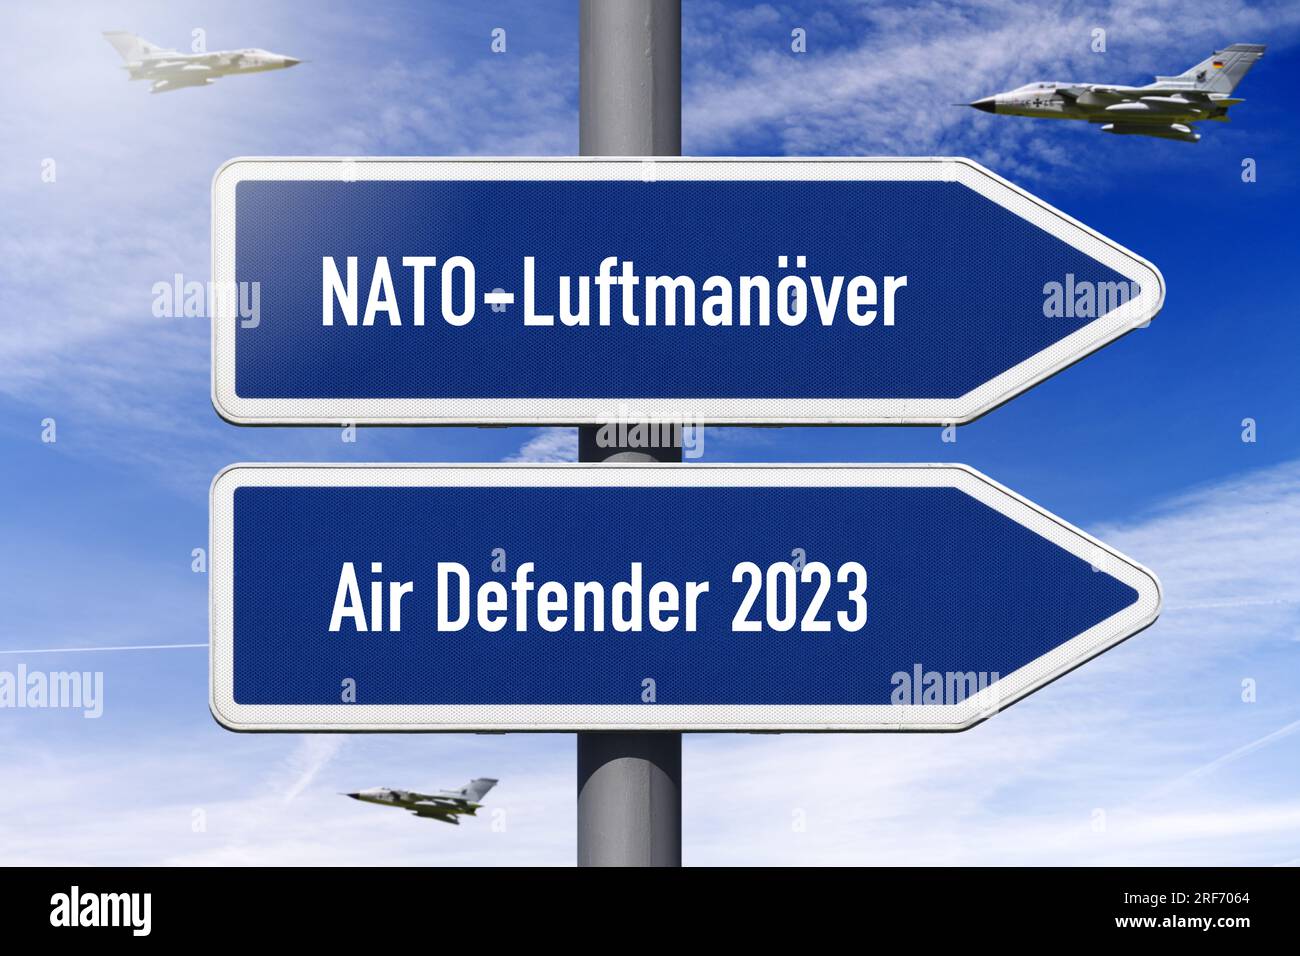 FOTOMONTAGE, Wegweiser mit Aufschrift NATO-Luftmanöver und Air Defender 2023 Foto Stock